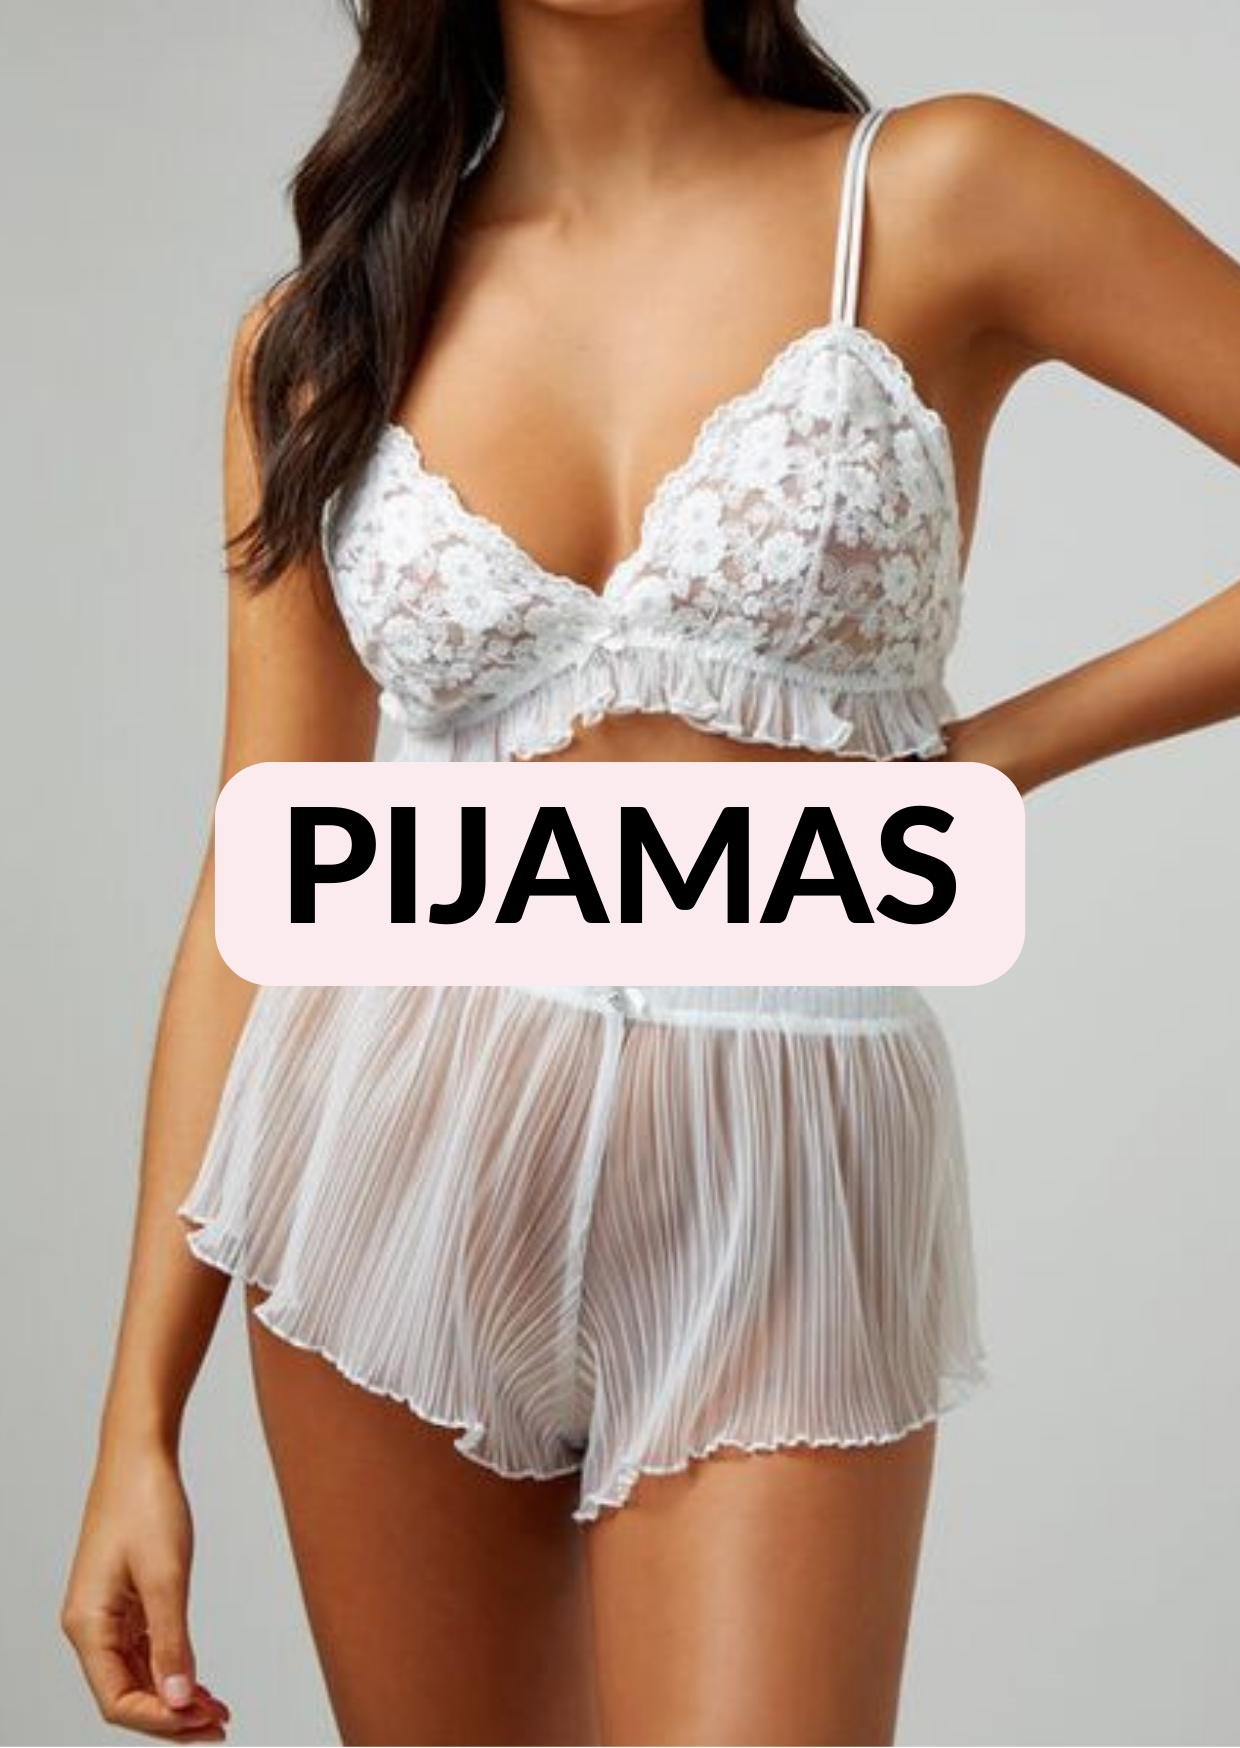 Pijamas, lencería, mujer